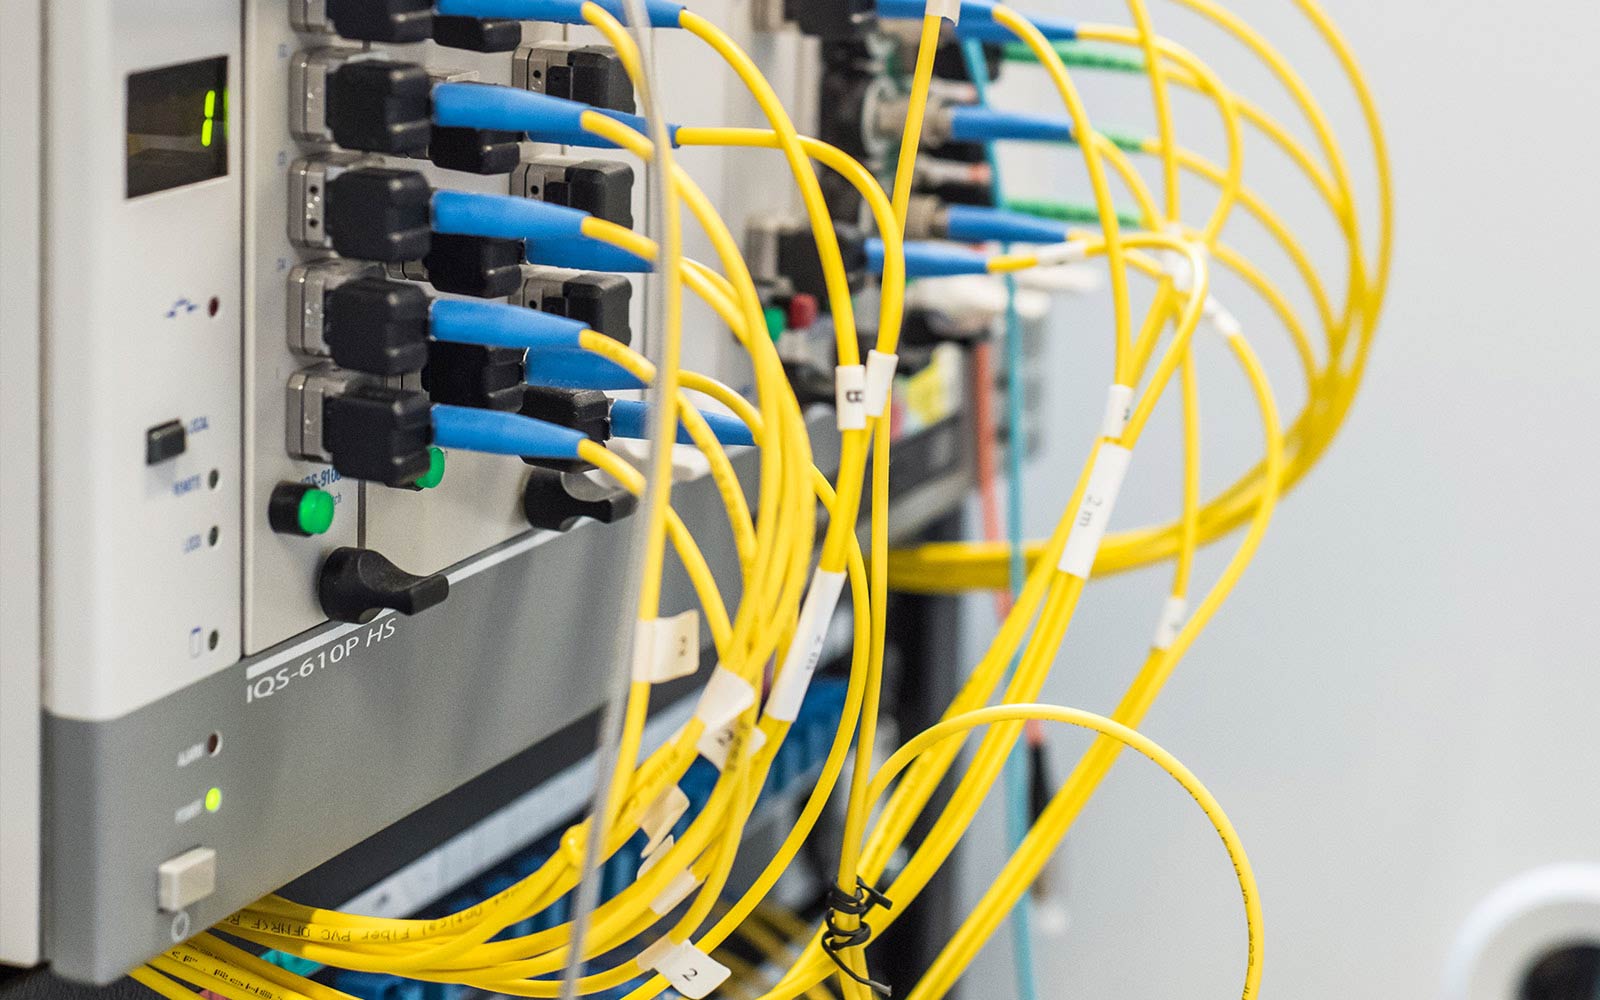 O cabo QSFP-DD para QSFP-DD DAC/AOC consiste em 2 QSFP-DD ligados diretamente através de cabo de cobre/fibra. Este tipo de cabo é dedicado para aplicações de 200G e/ou 400G e se encaixa na porta QSFP-DD de qualquer marca de equipamento. A Skylane Optics oferece uma gama completa de cabos QSFP-DD com um conjunto único de serviços, tais como testes, codificação, personalização, suporte eficaz e experiência técnica.